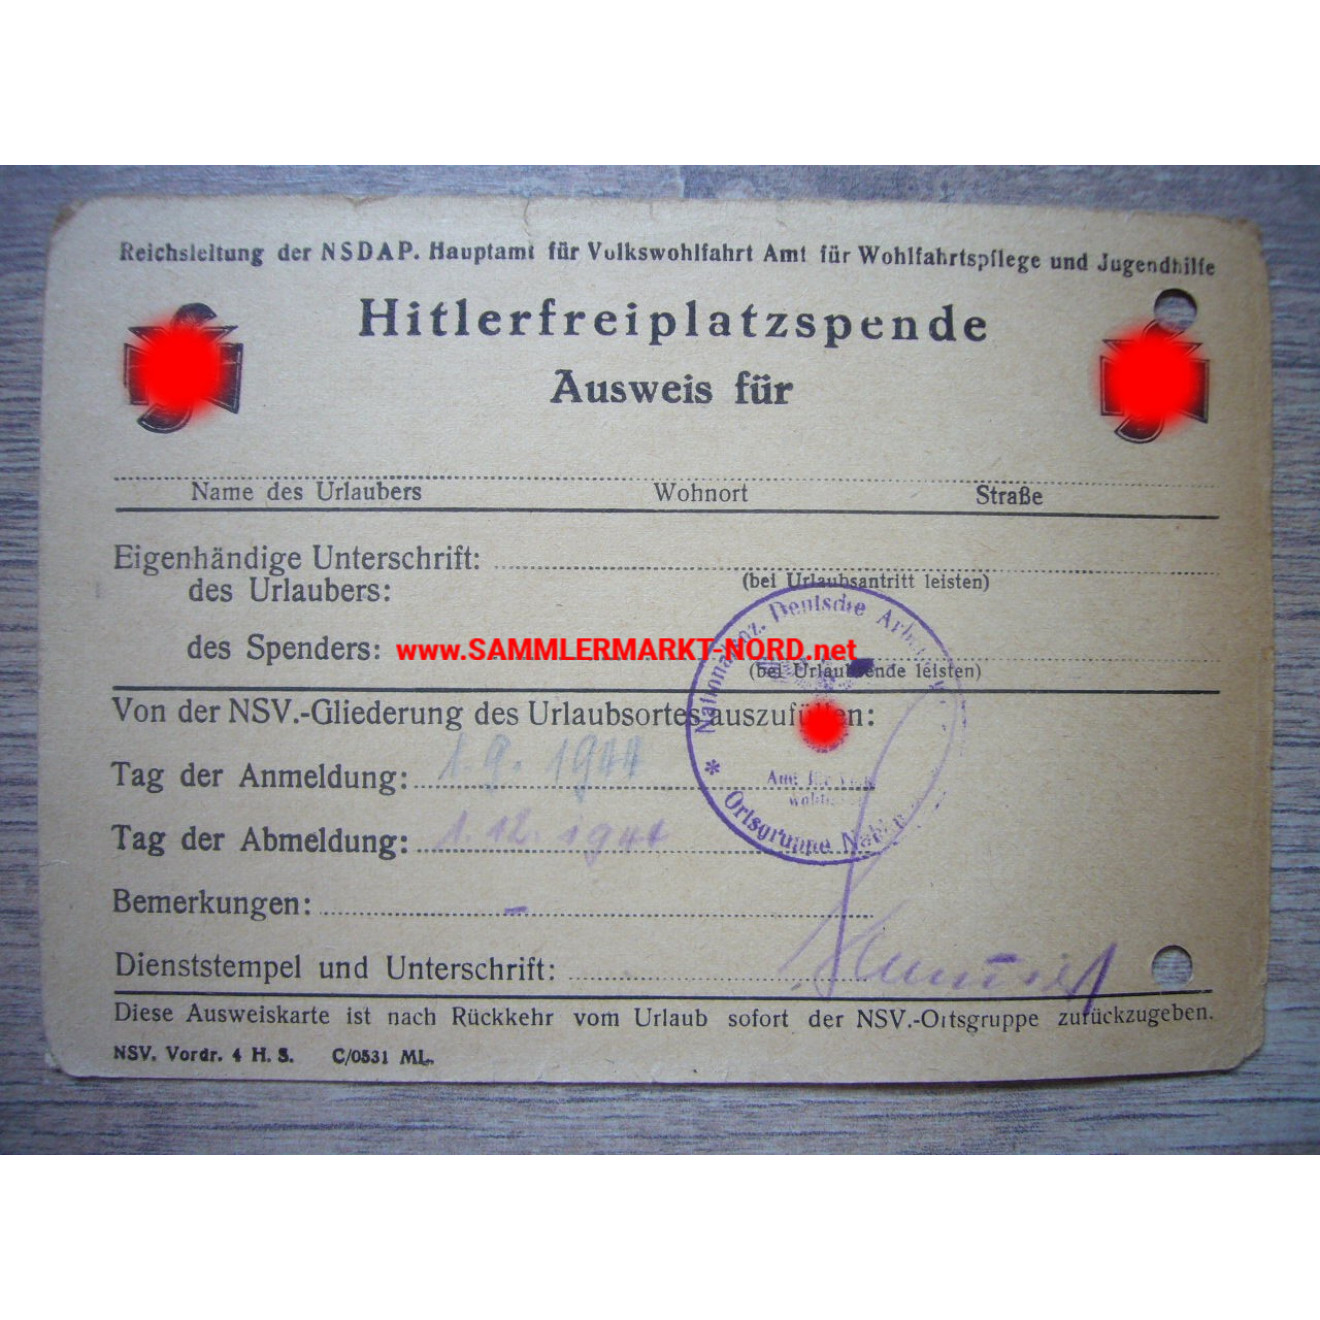 NSV - Ausweis für Hitlerfreiplatzspende